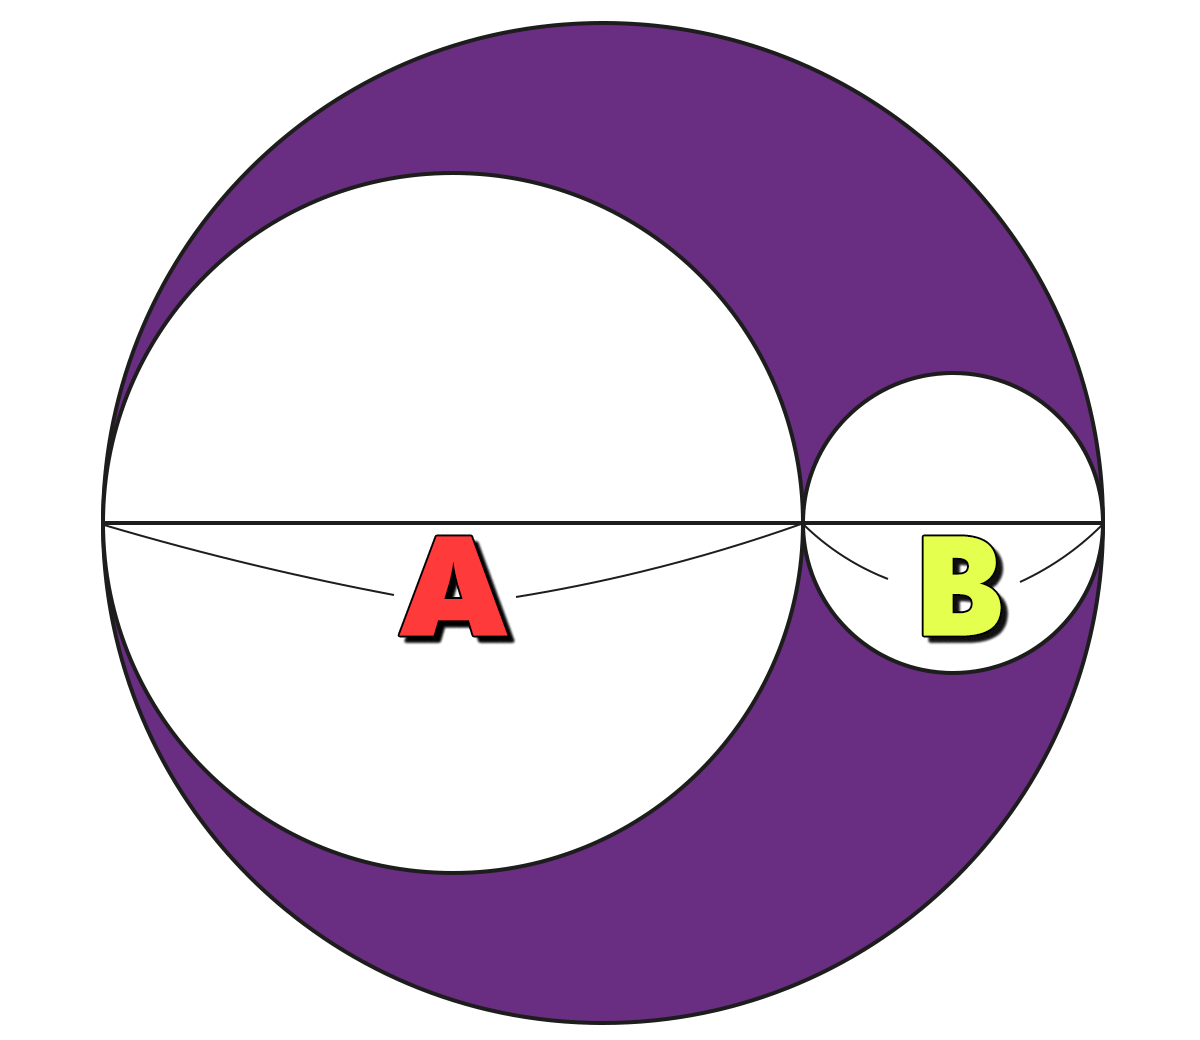 面積とまわりの長さの問題 ｜ 3つの円